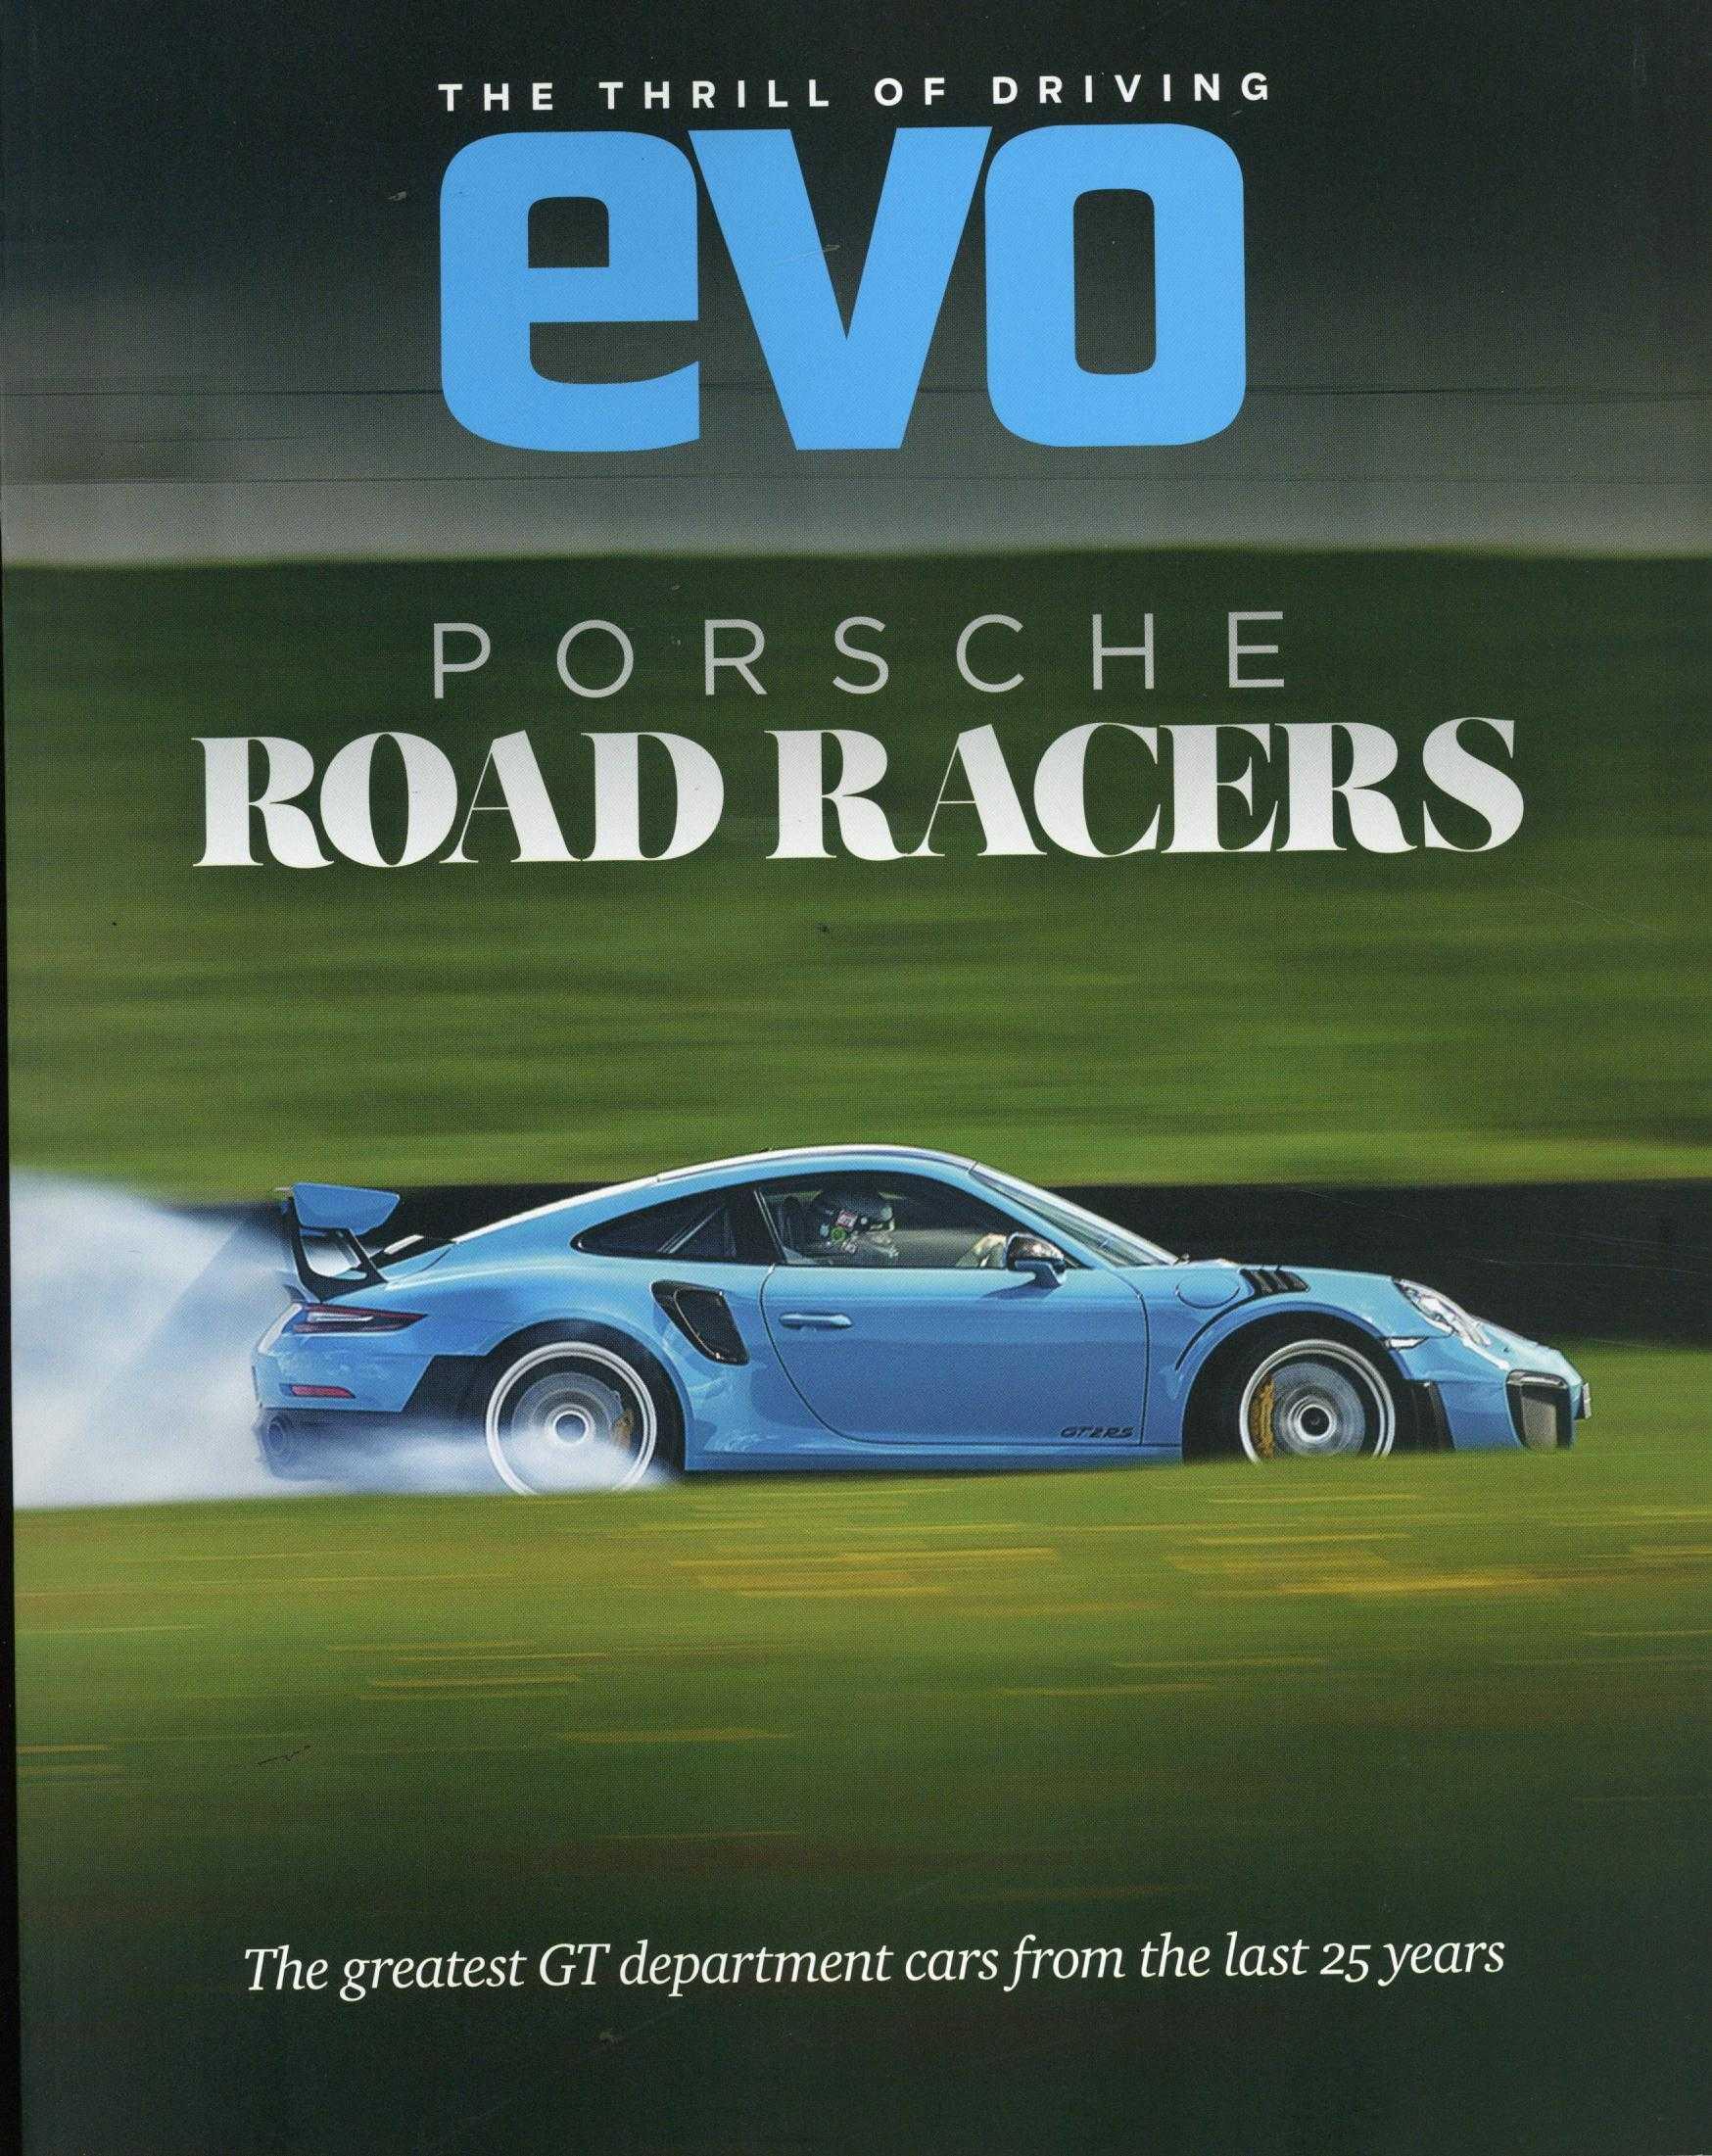 BZ Porsche Road Racers